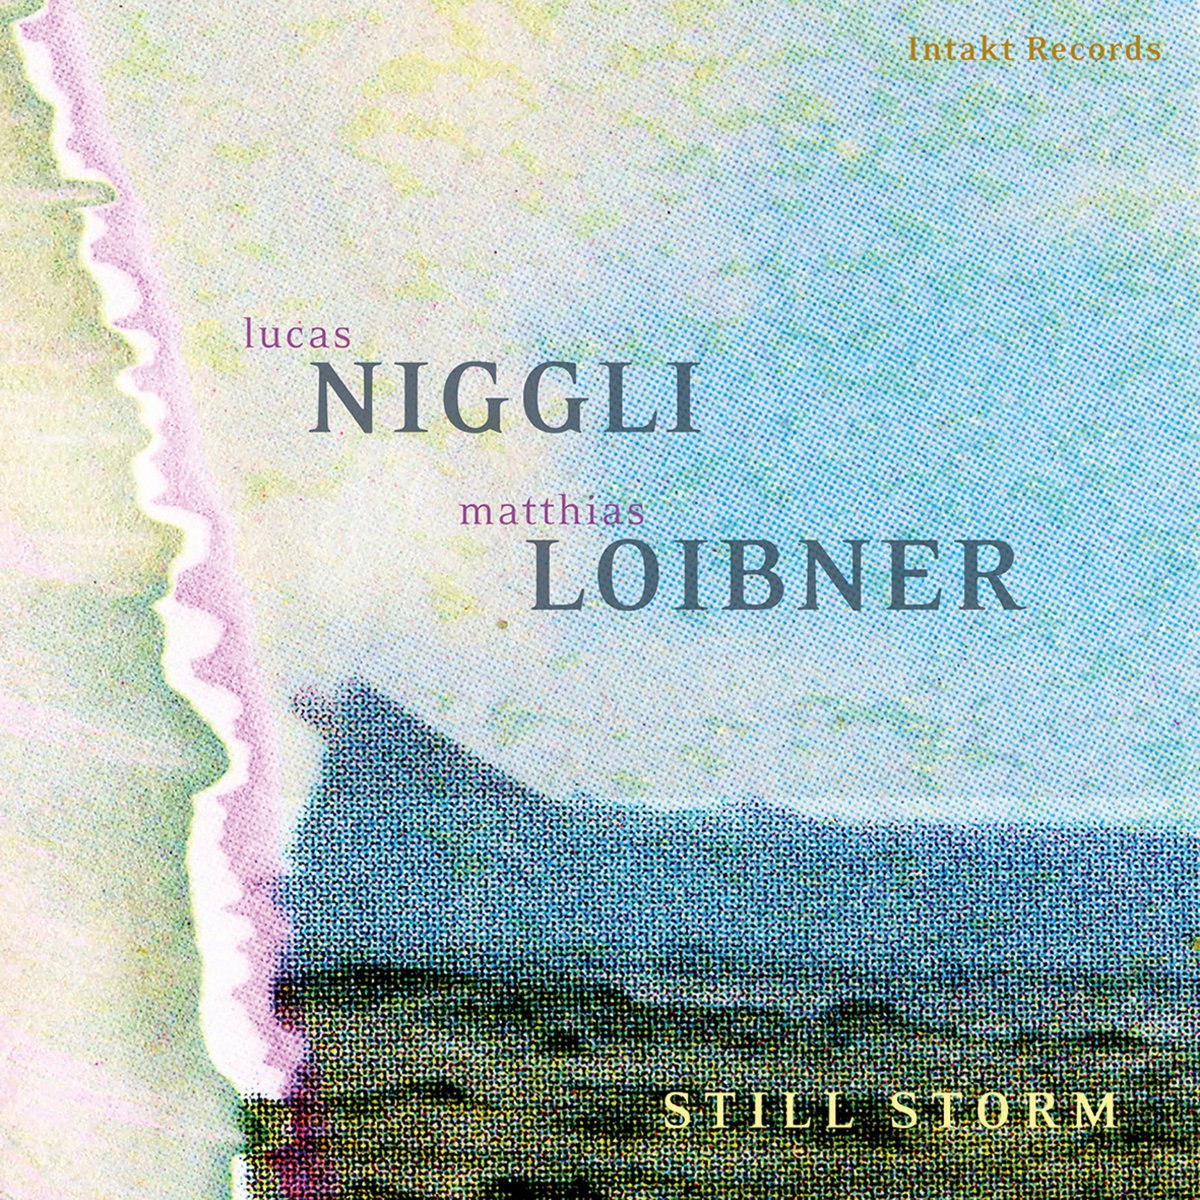 Lucas Niggli, Matthias Loibner – STILL STORM